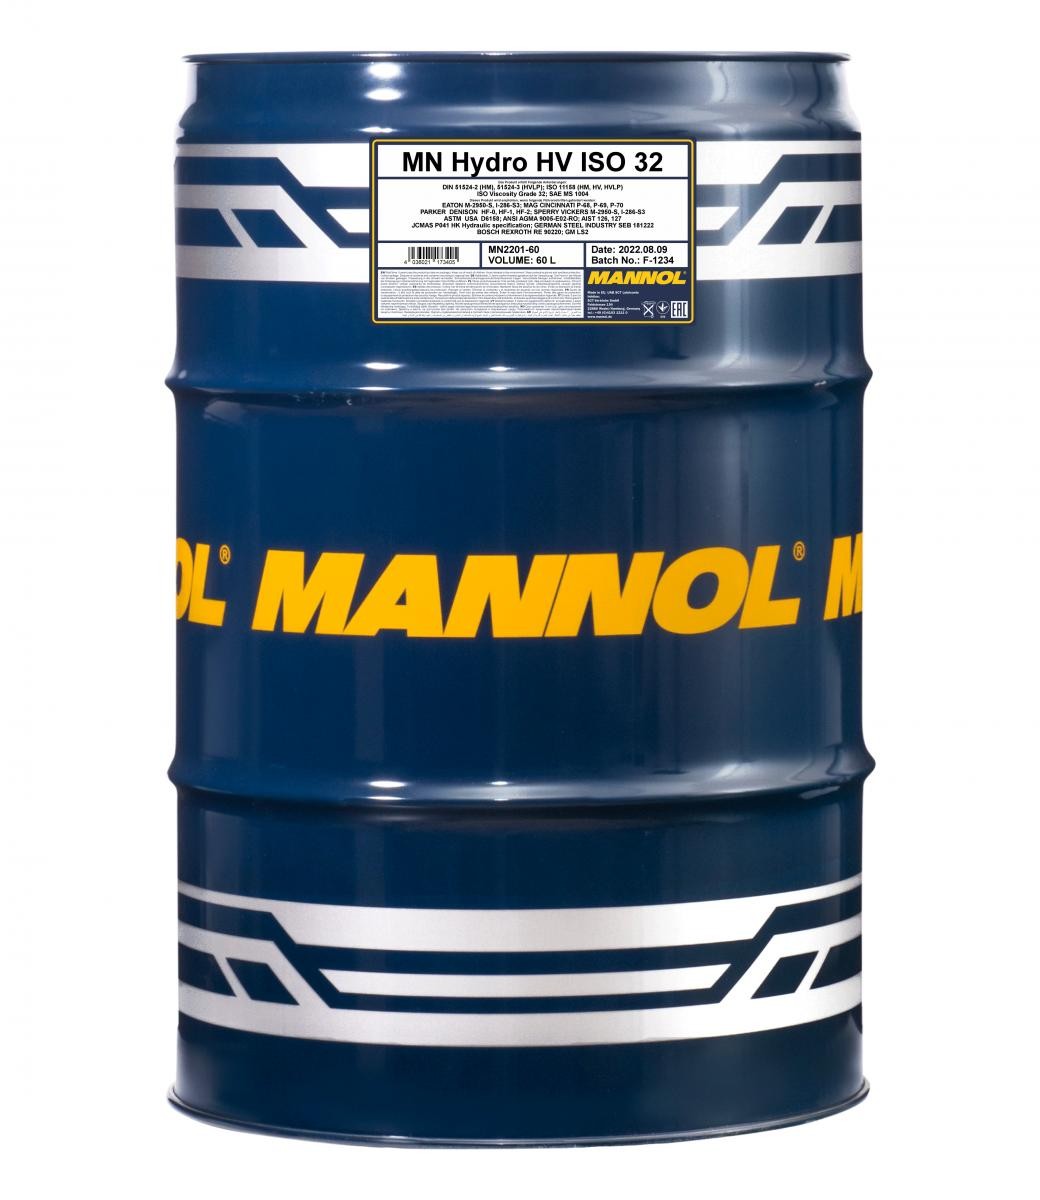 Hydraulic oil MANNOL Hydro HV ISO 32 - MN2201-60